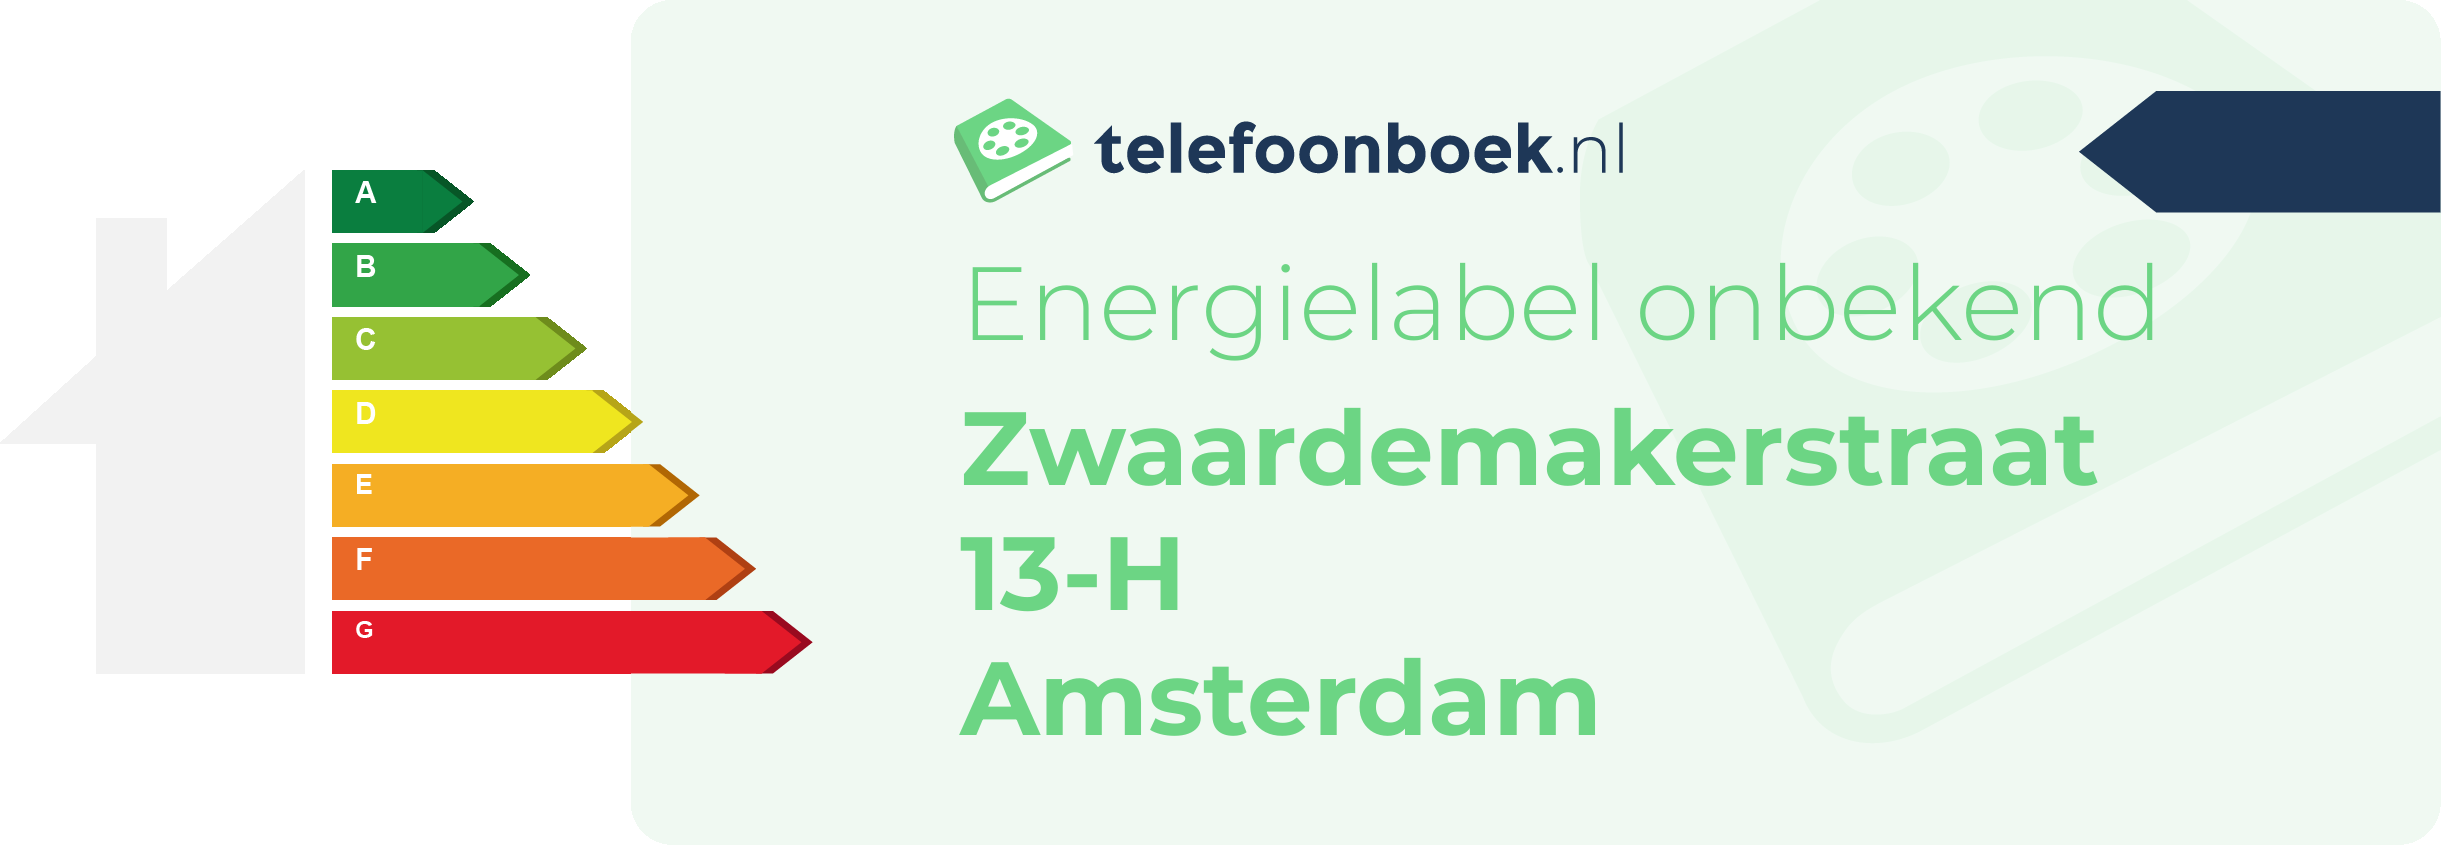 Energielabel Zwaardemakerstraat 13-H Amsterdam